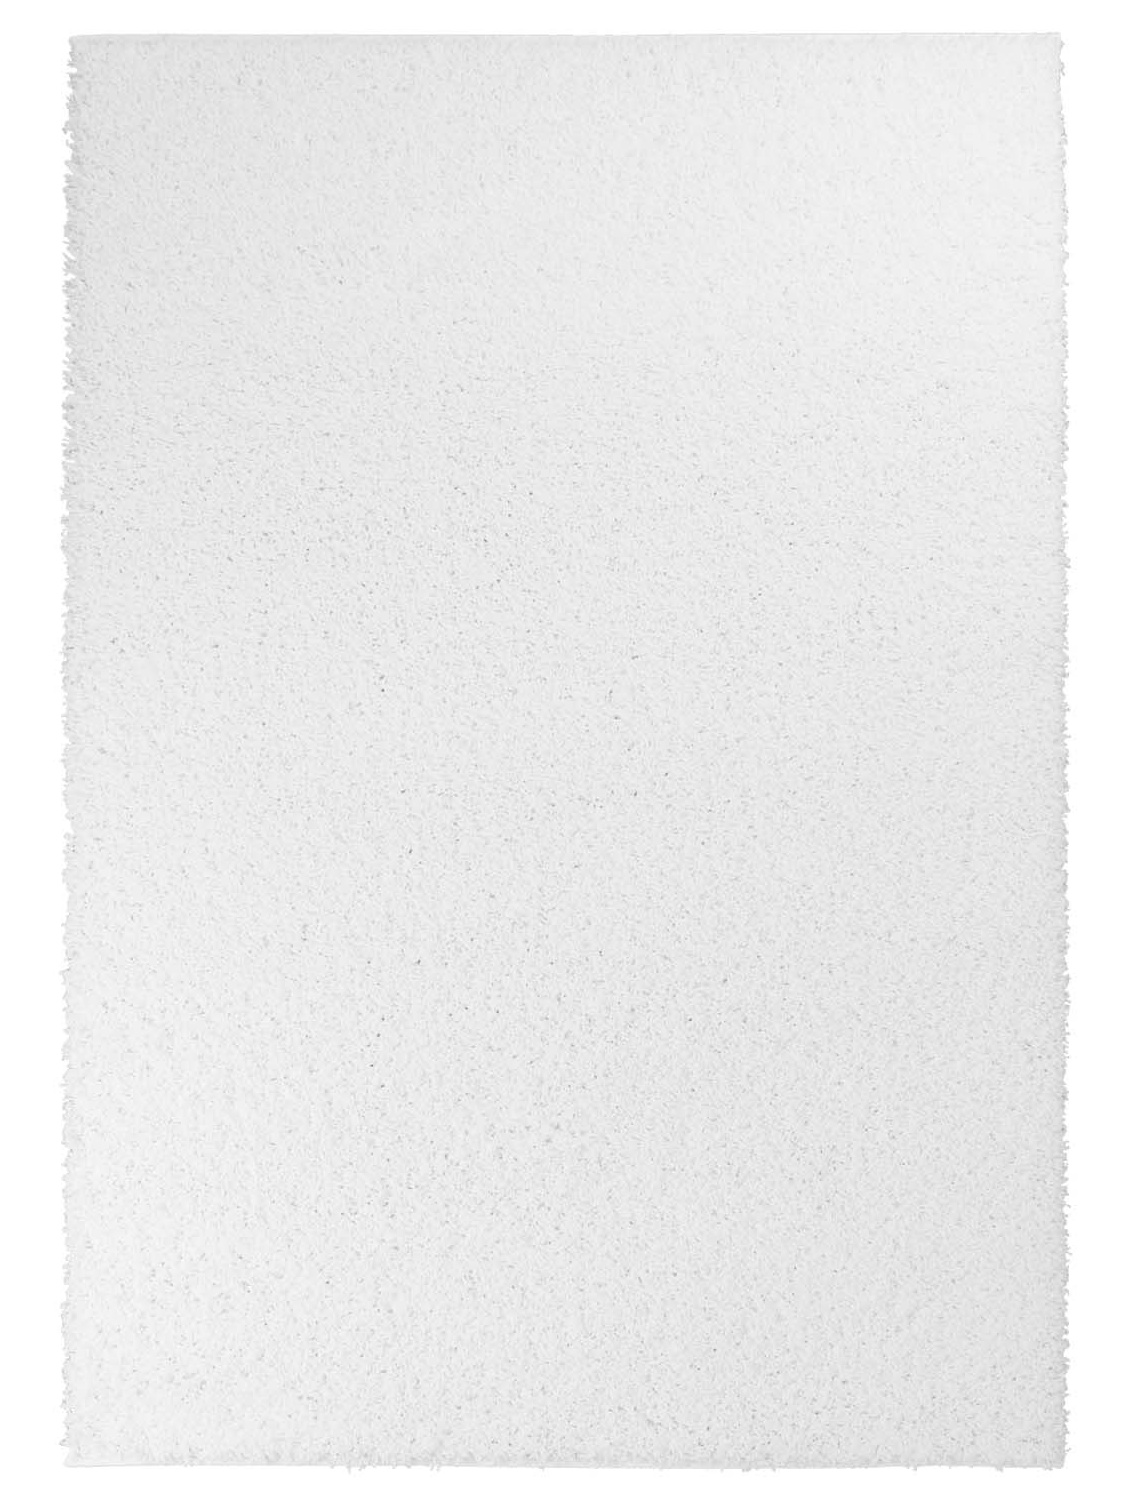 Trim hochflorteppich weiß shaggy teppich rund hochflor wohnzimmer 60x120 cm 80x 150 cm 140x200 cm 160x230 cm 200x300 cm